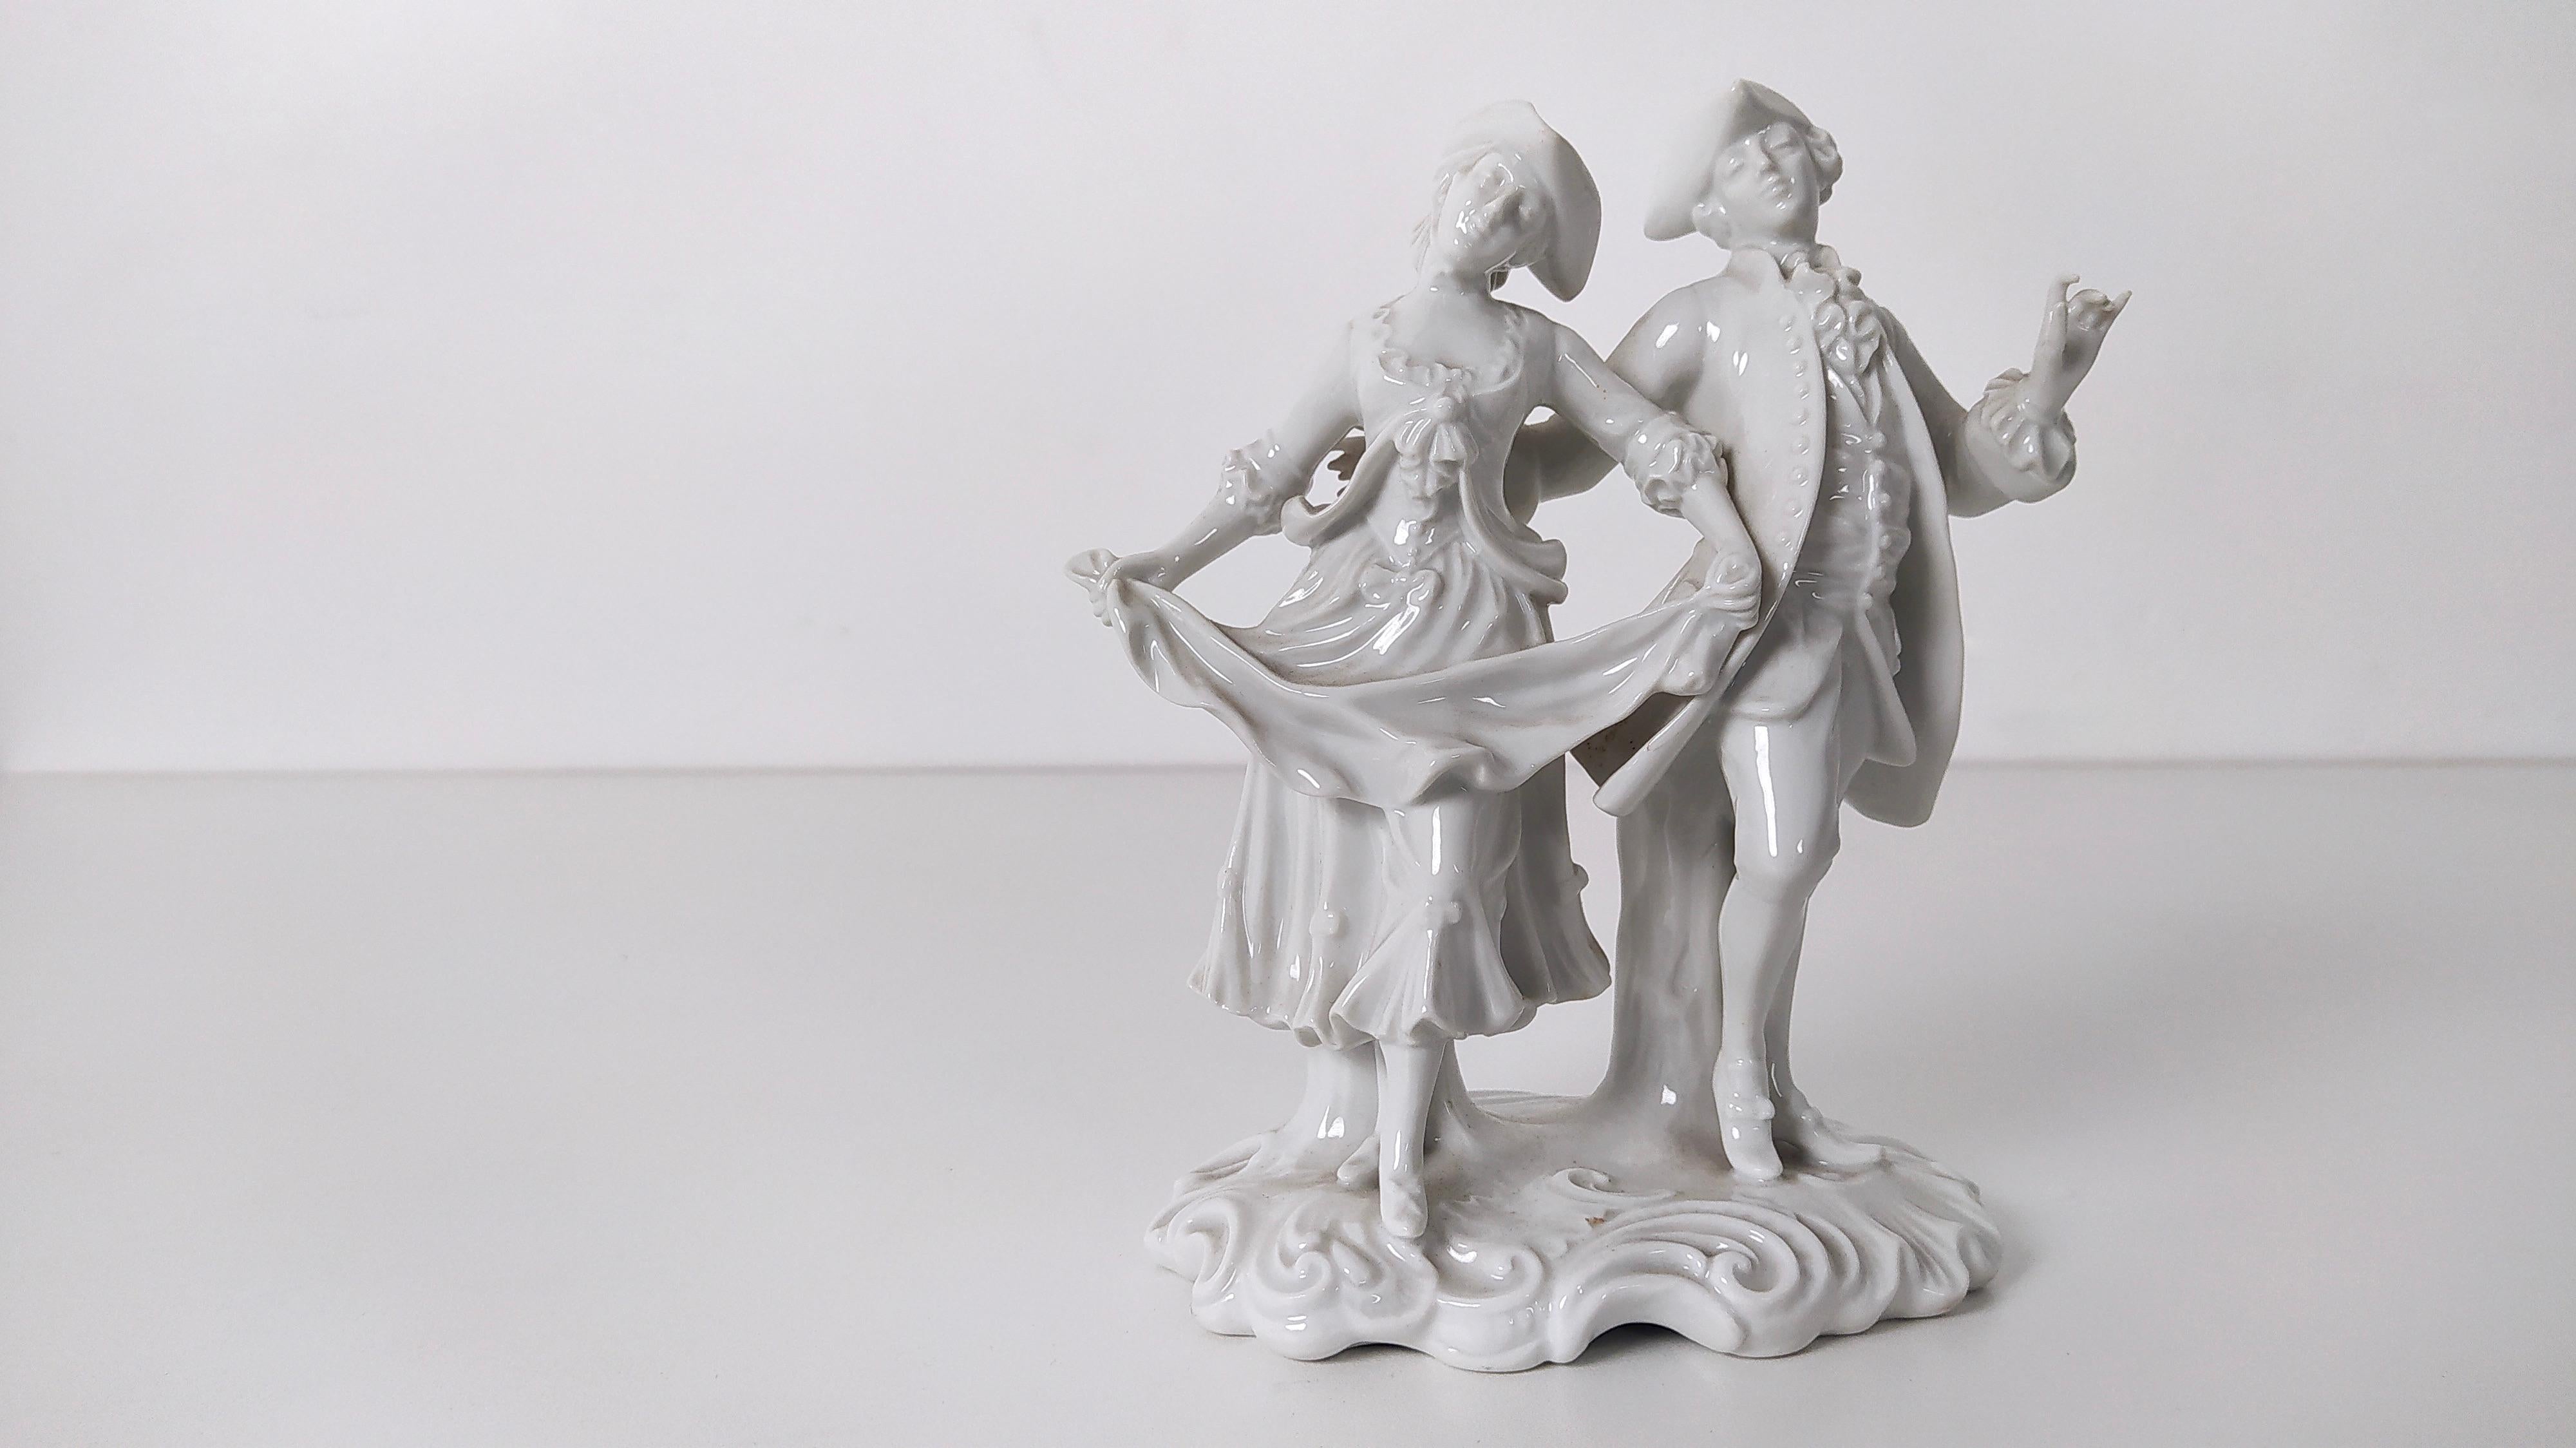 Fabriqué en Italie, années 1960.
Ces deux figurines du 18e siècle sont réalisées en porcelaine de Capodimonte.
Cette statue peut présenter de légères traces d'utilisation puisqu'elle est vintage, mais elle peut être considérée comme étant en